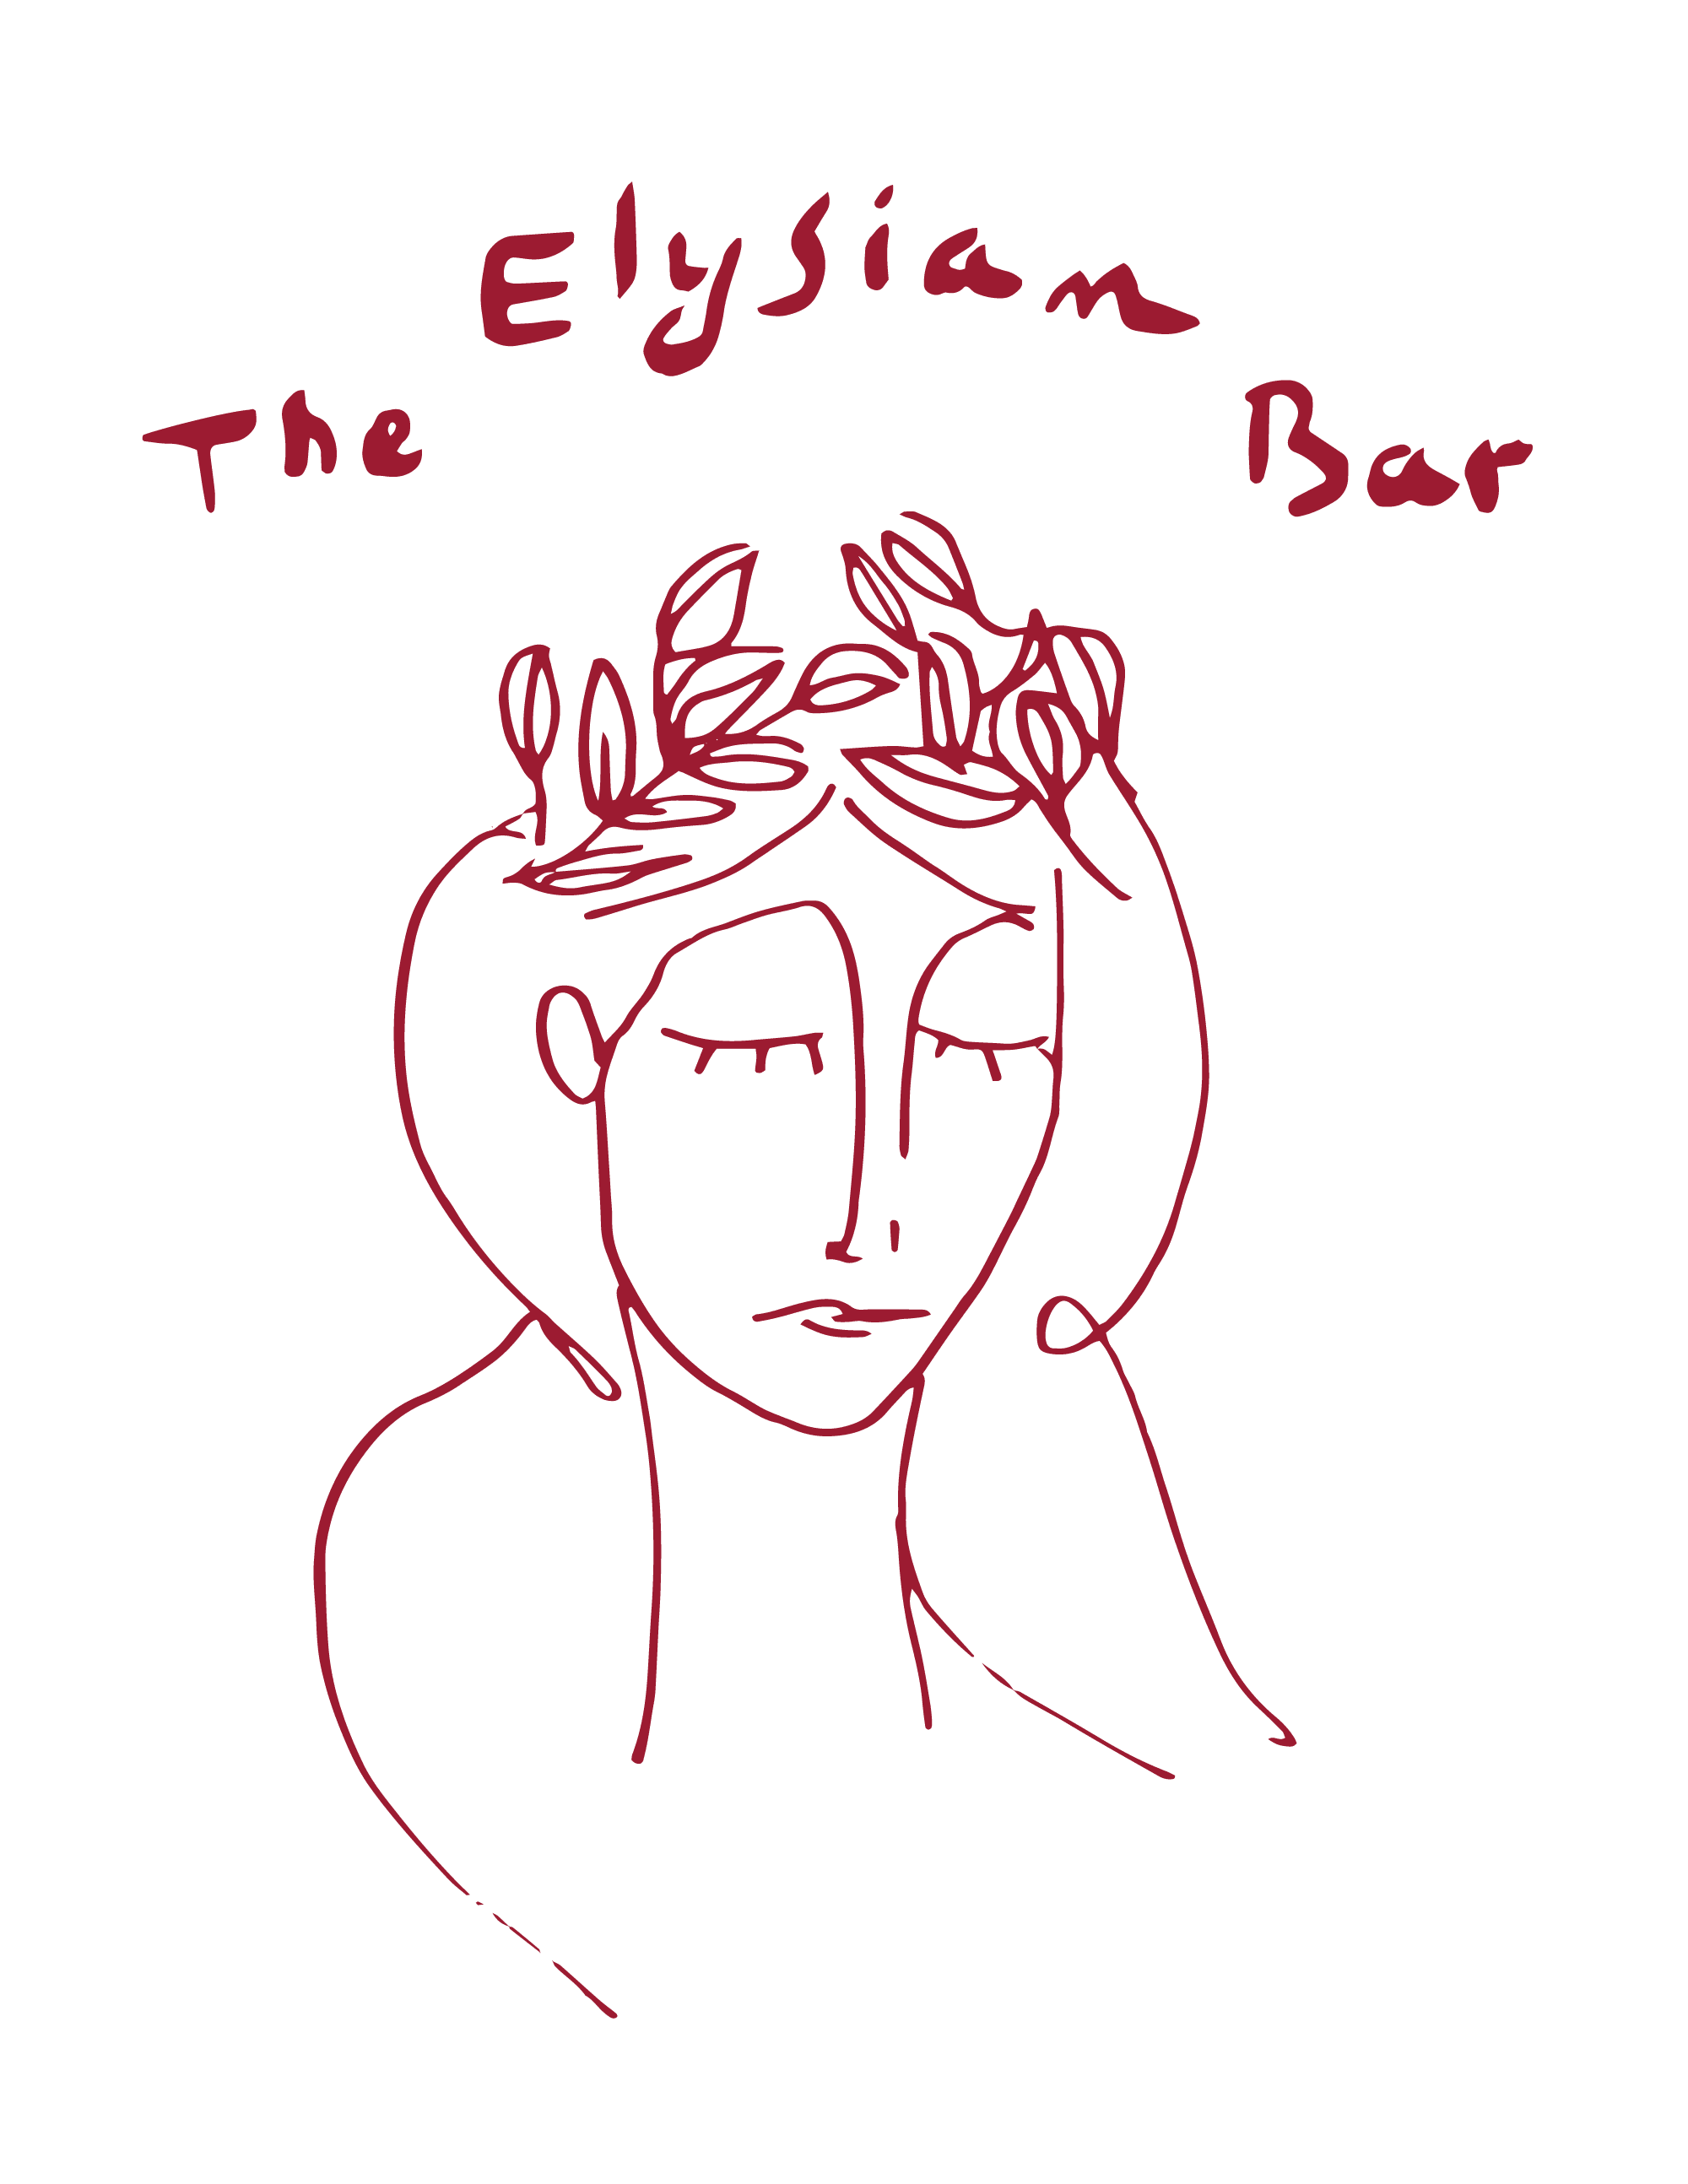 The Elysian Bar